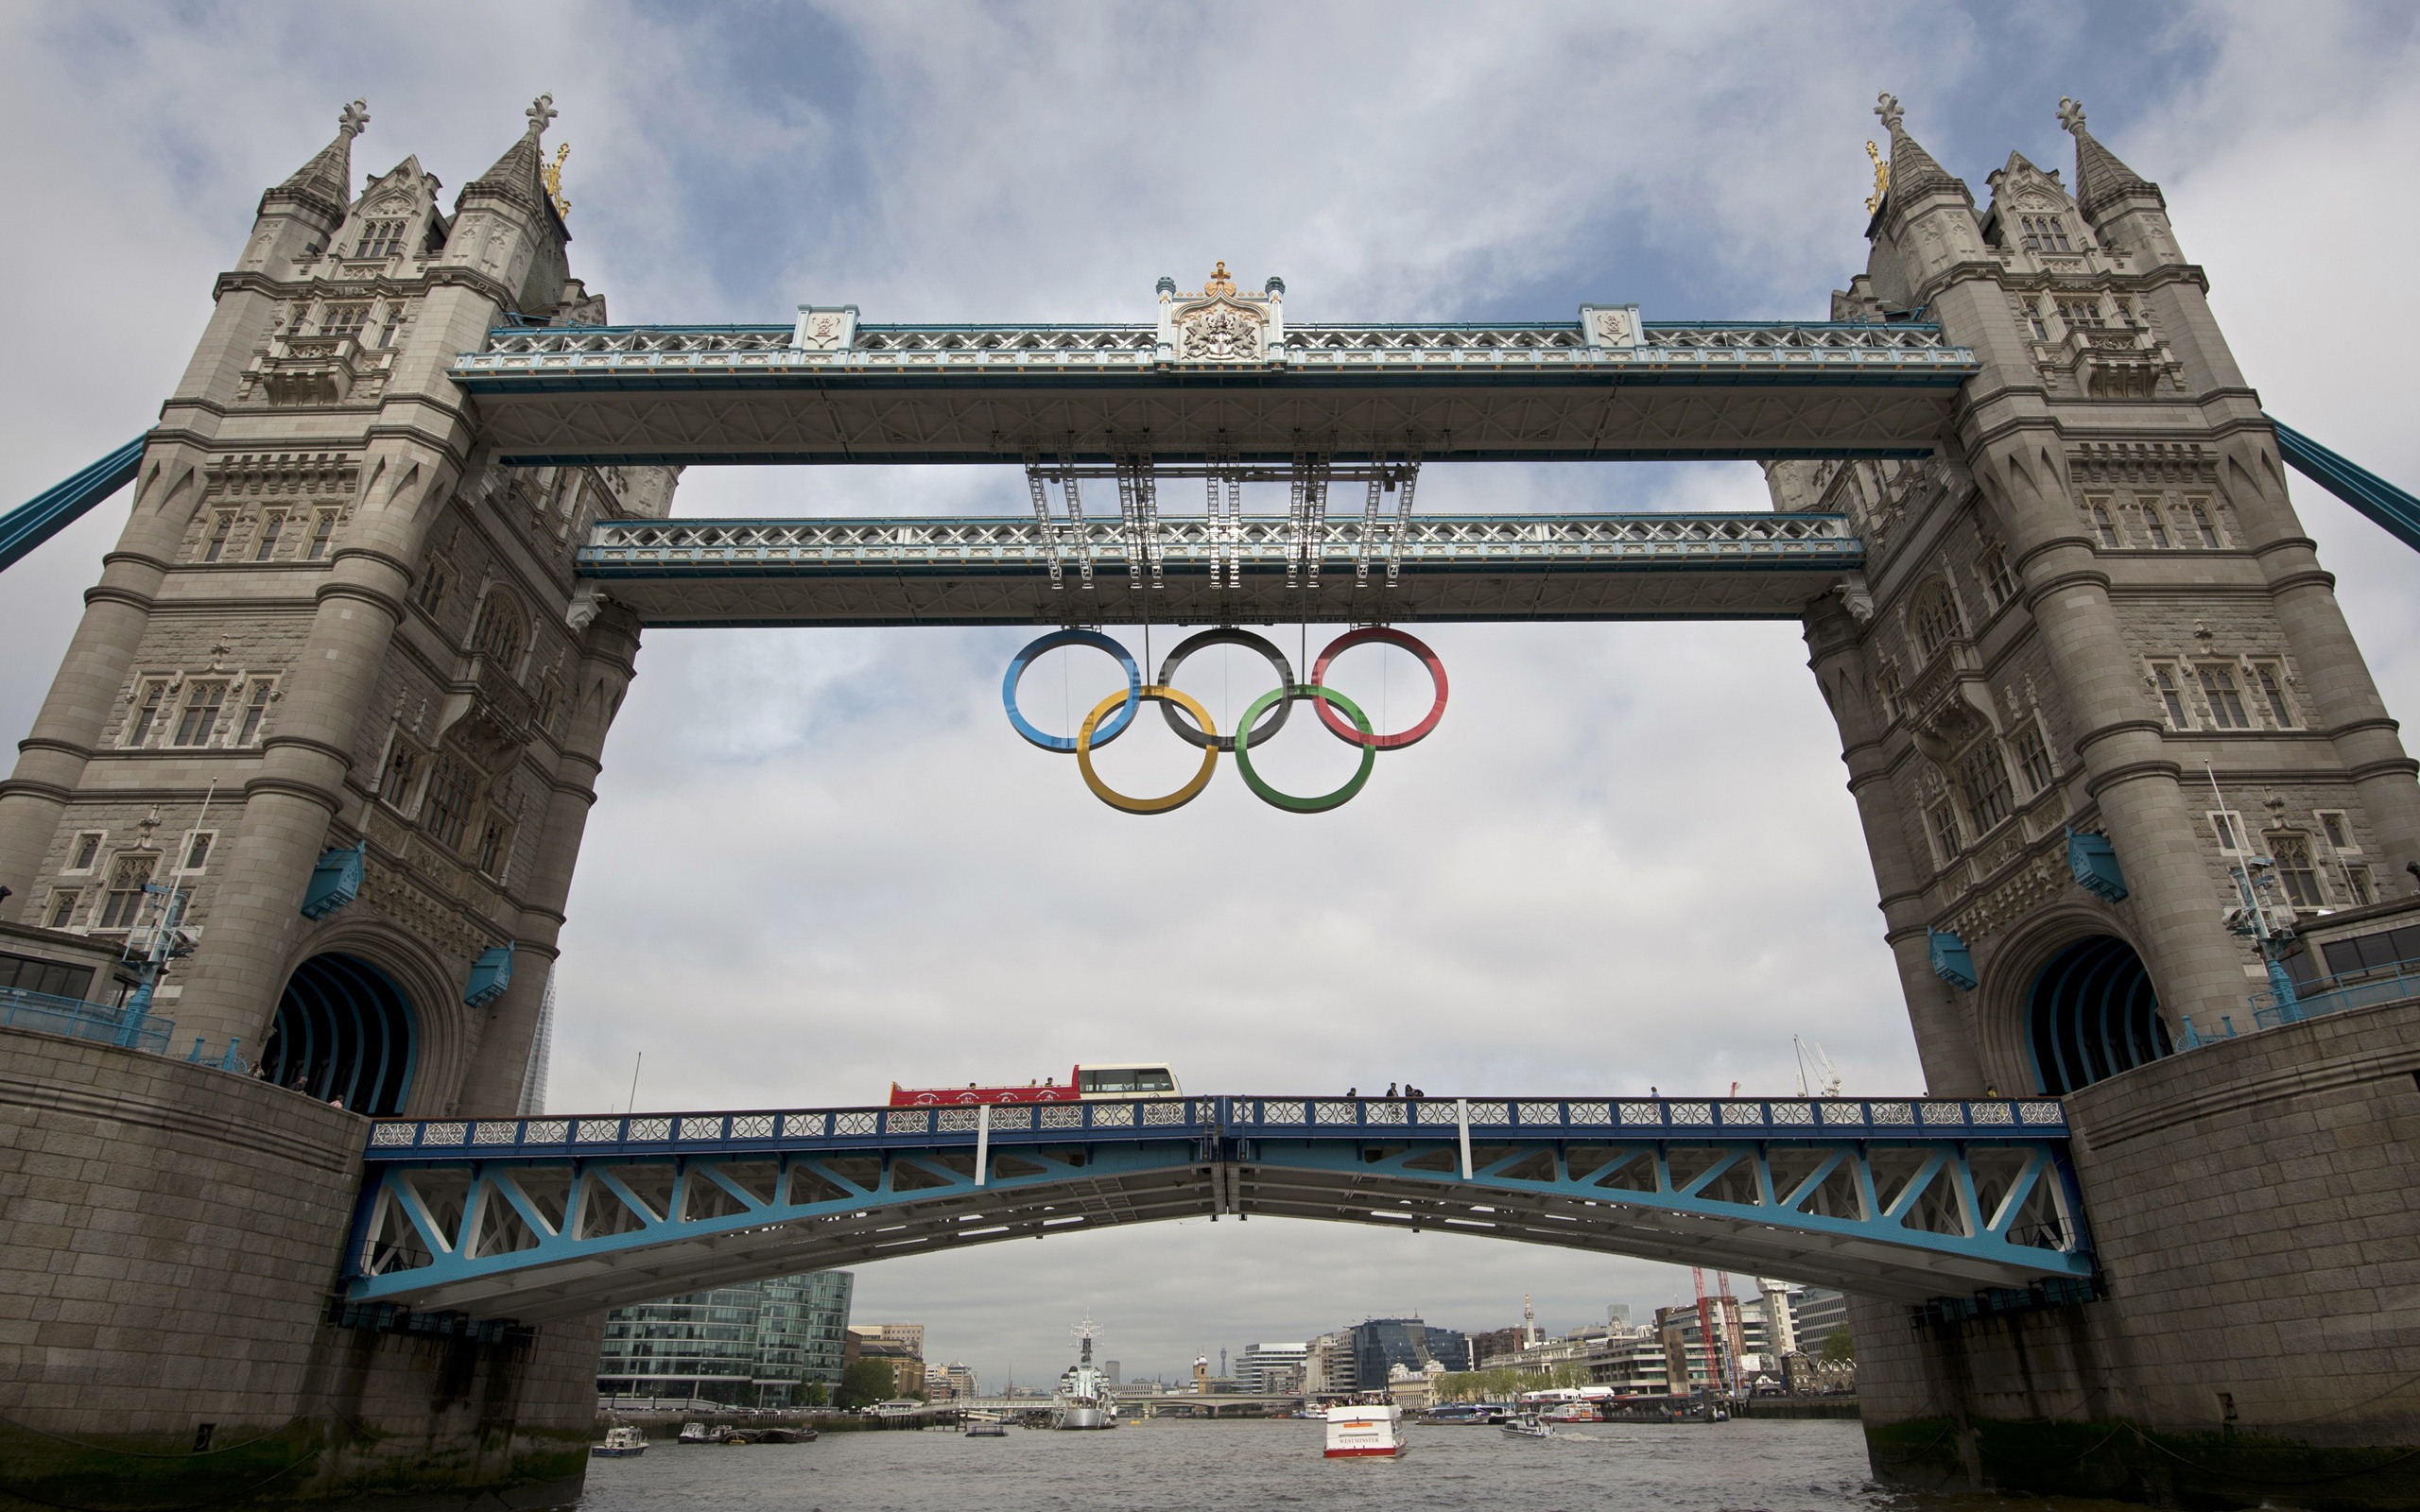 Londres 2012 Olimpiadas fondos temáticos (1) #27 - 2560x1600